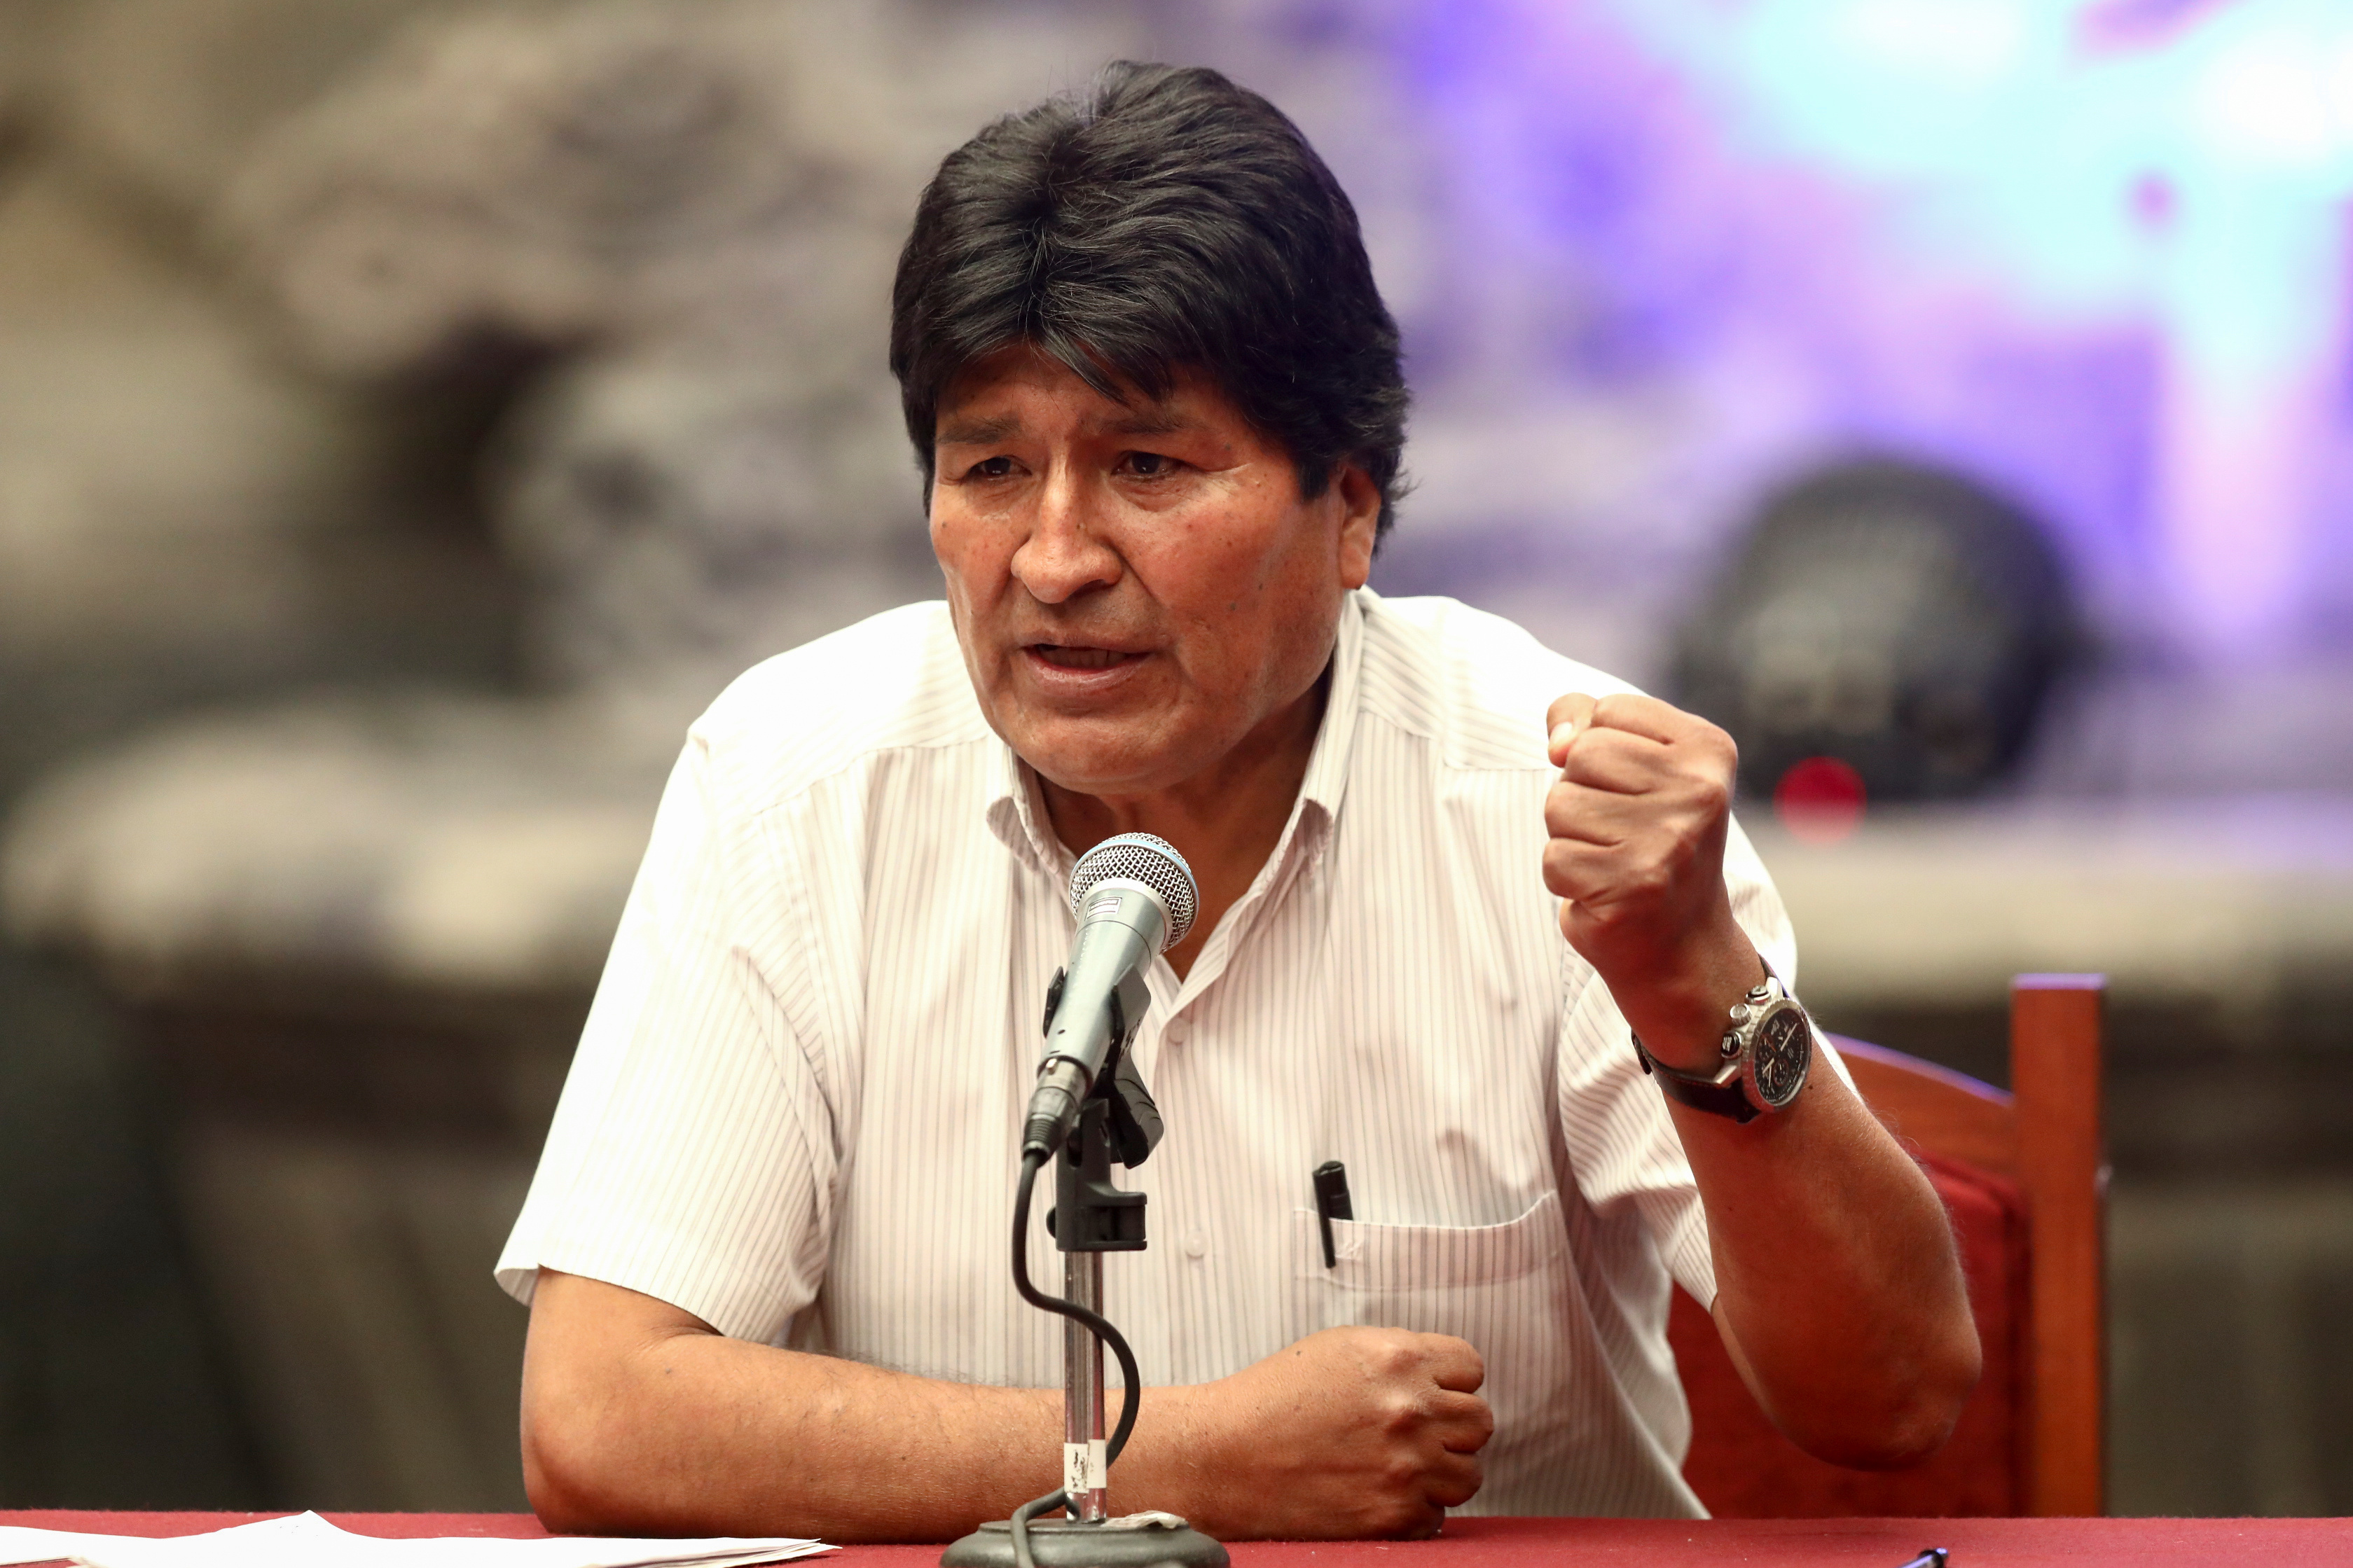 Un nuevo capítulo de la novela: Evo Morales denunciará robo de documentos personales